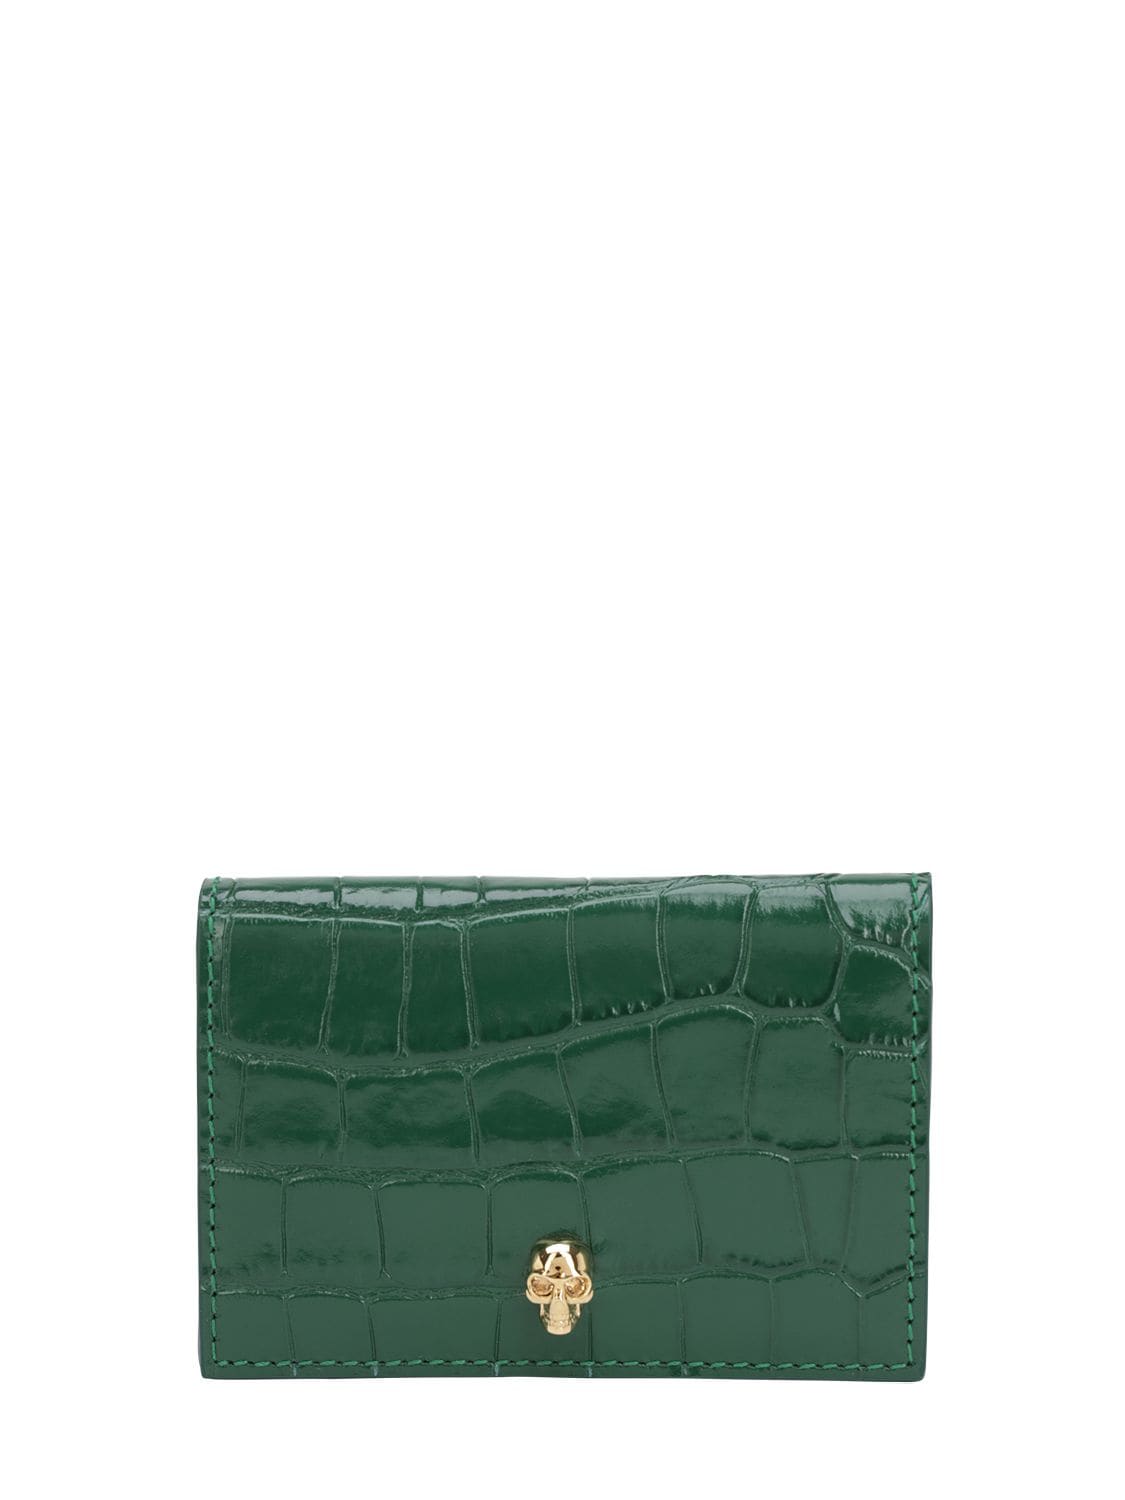 Alexander Mcqueen Croc Embossed Leather Wallet In Emerald